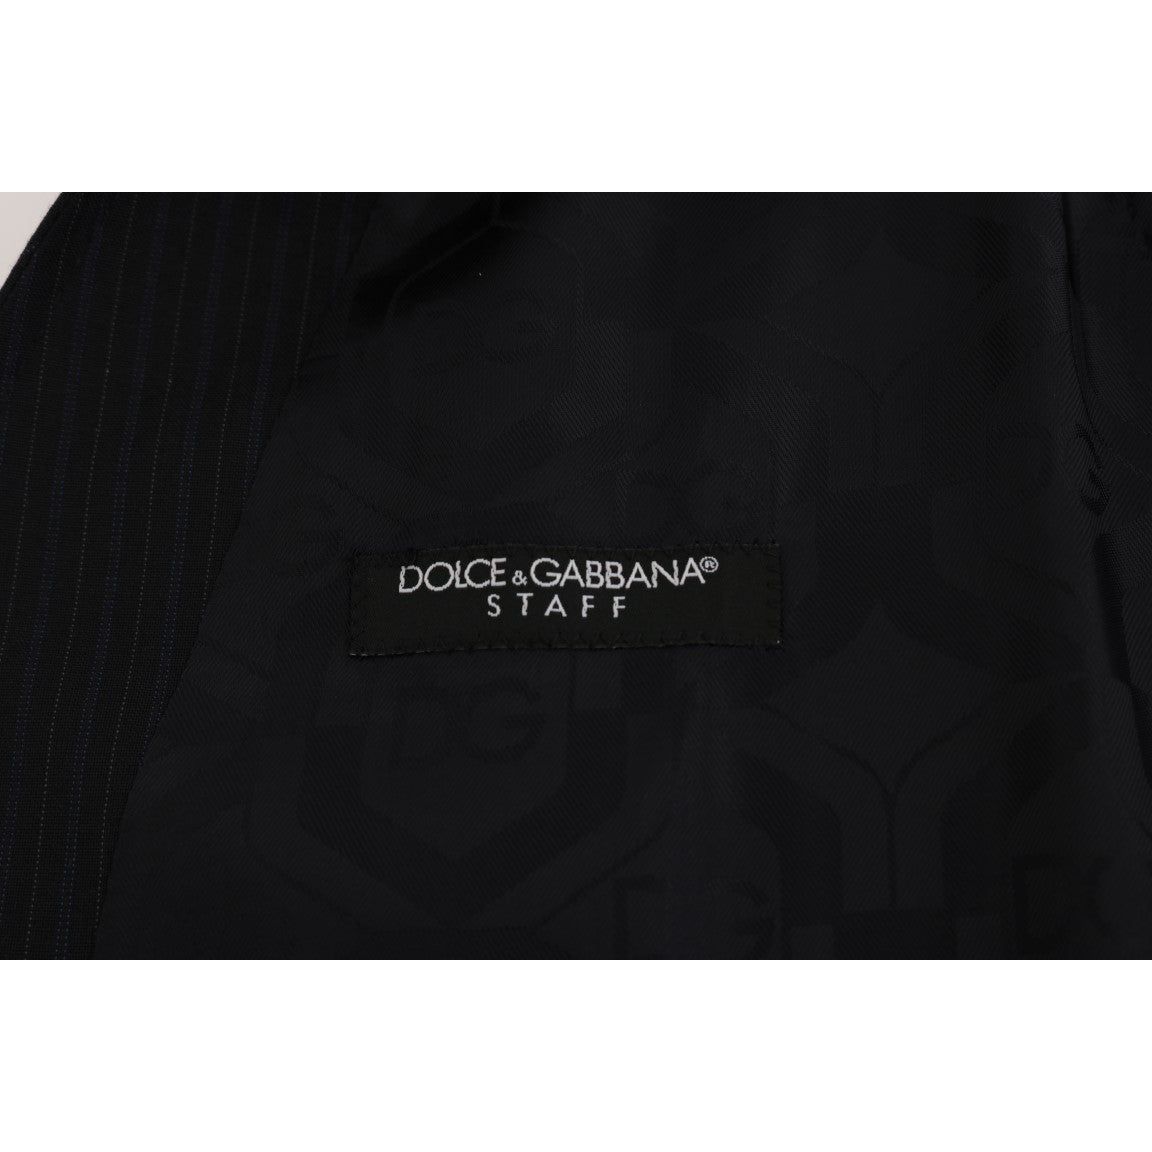 Dolce & Gabbana Sleek Striped Wool Blend Waistcoat Vest black-staff-wool-striped-vest